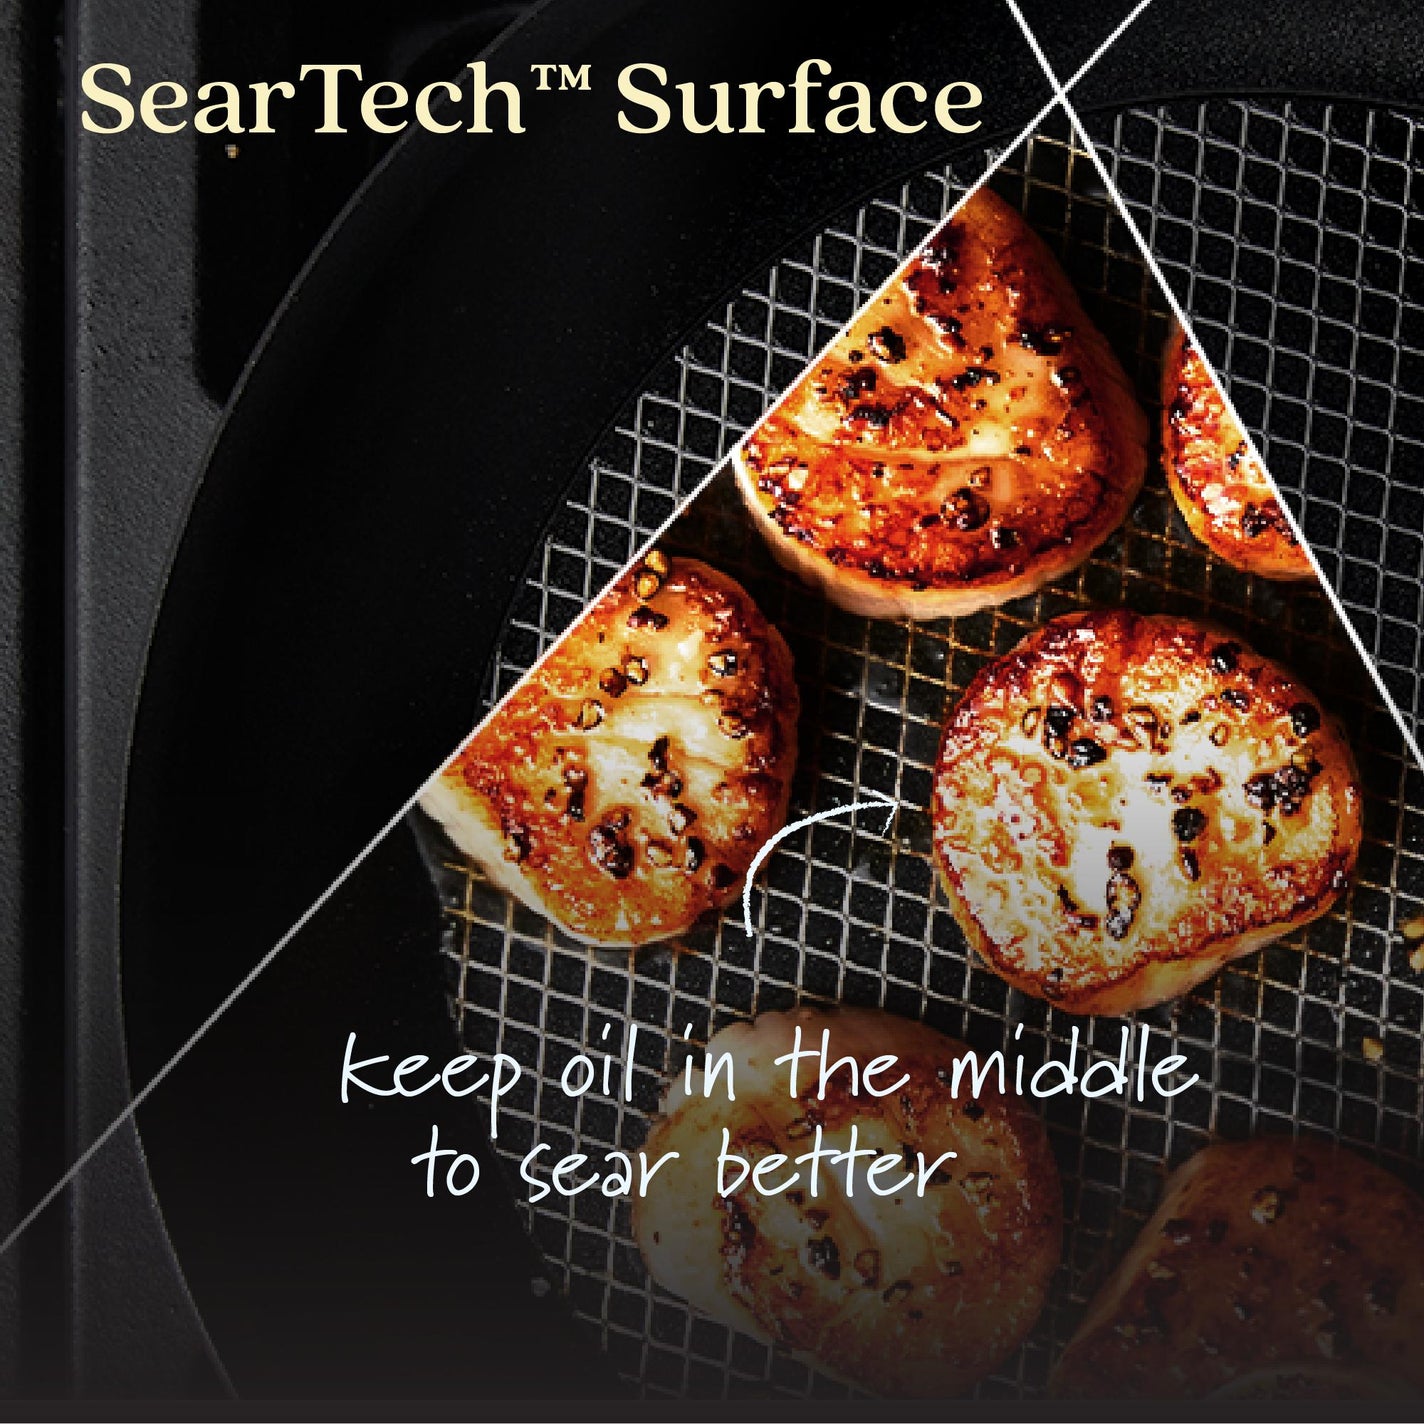 AnolonX 10-Piece Cookware Set w/SearTech(TM) Nonstick Surface